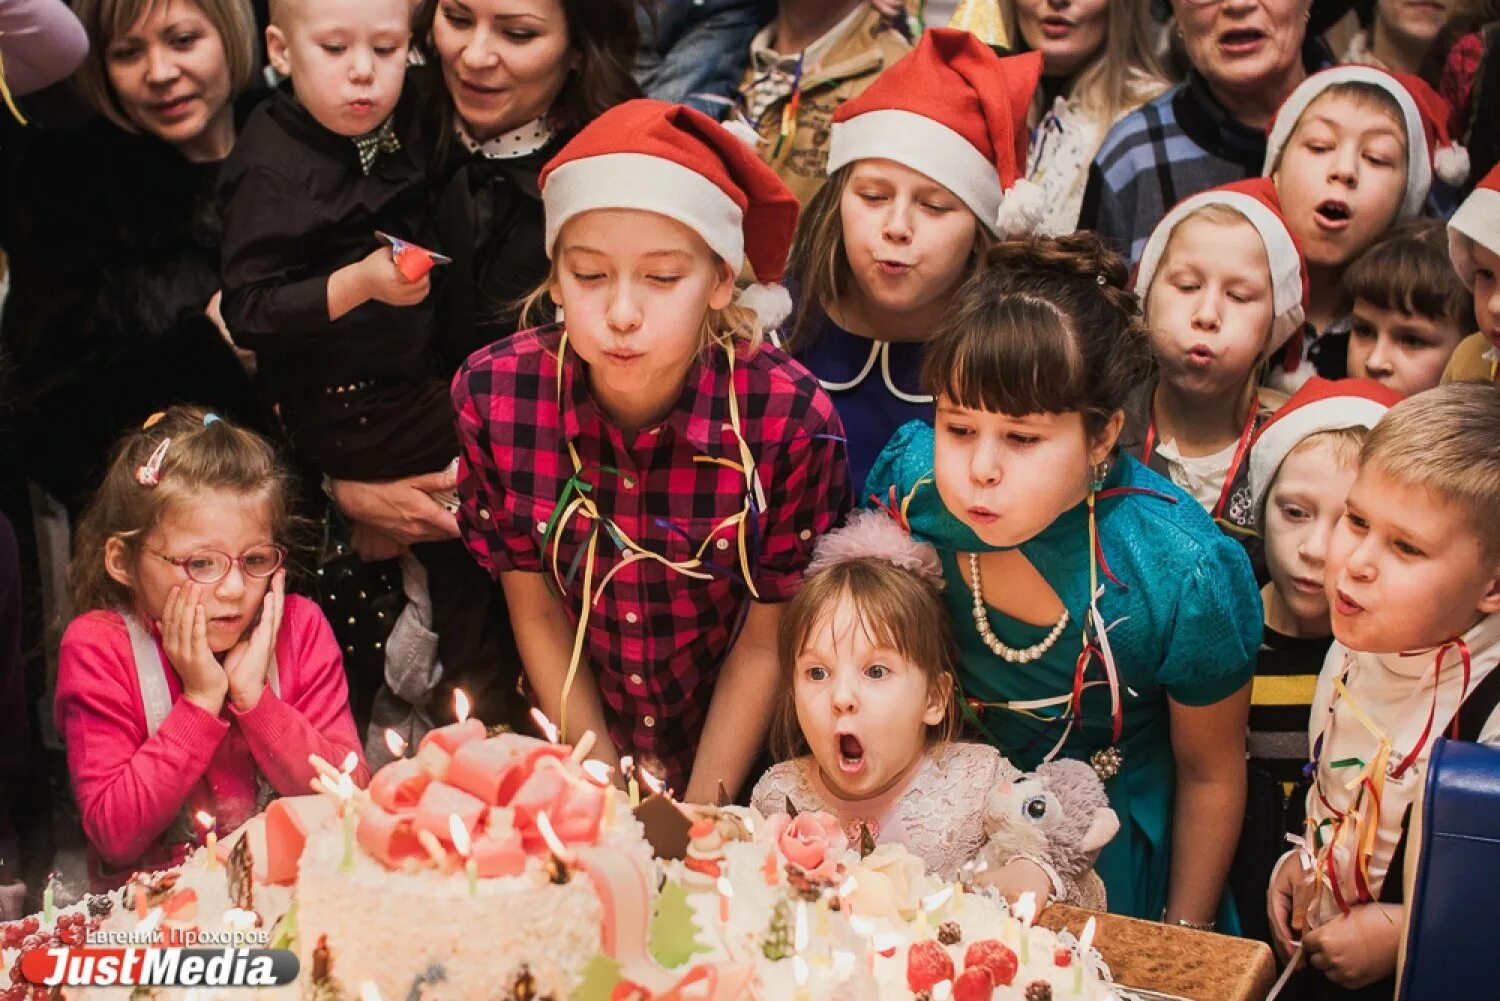 С днем рождения 31 декабря. Новогодние именинники. Праздничная вечеринка с огромным тортом. Необычные праздники 31 декабря. 31 декабря 2012 год